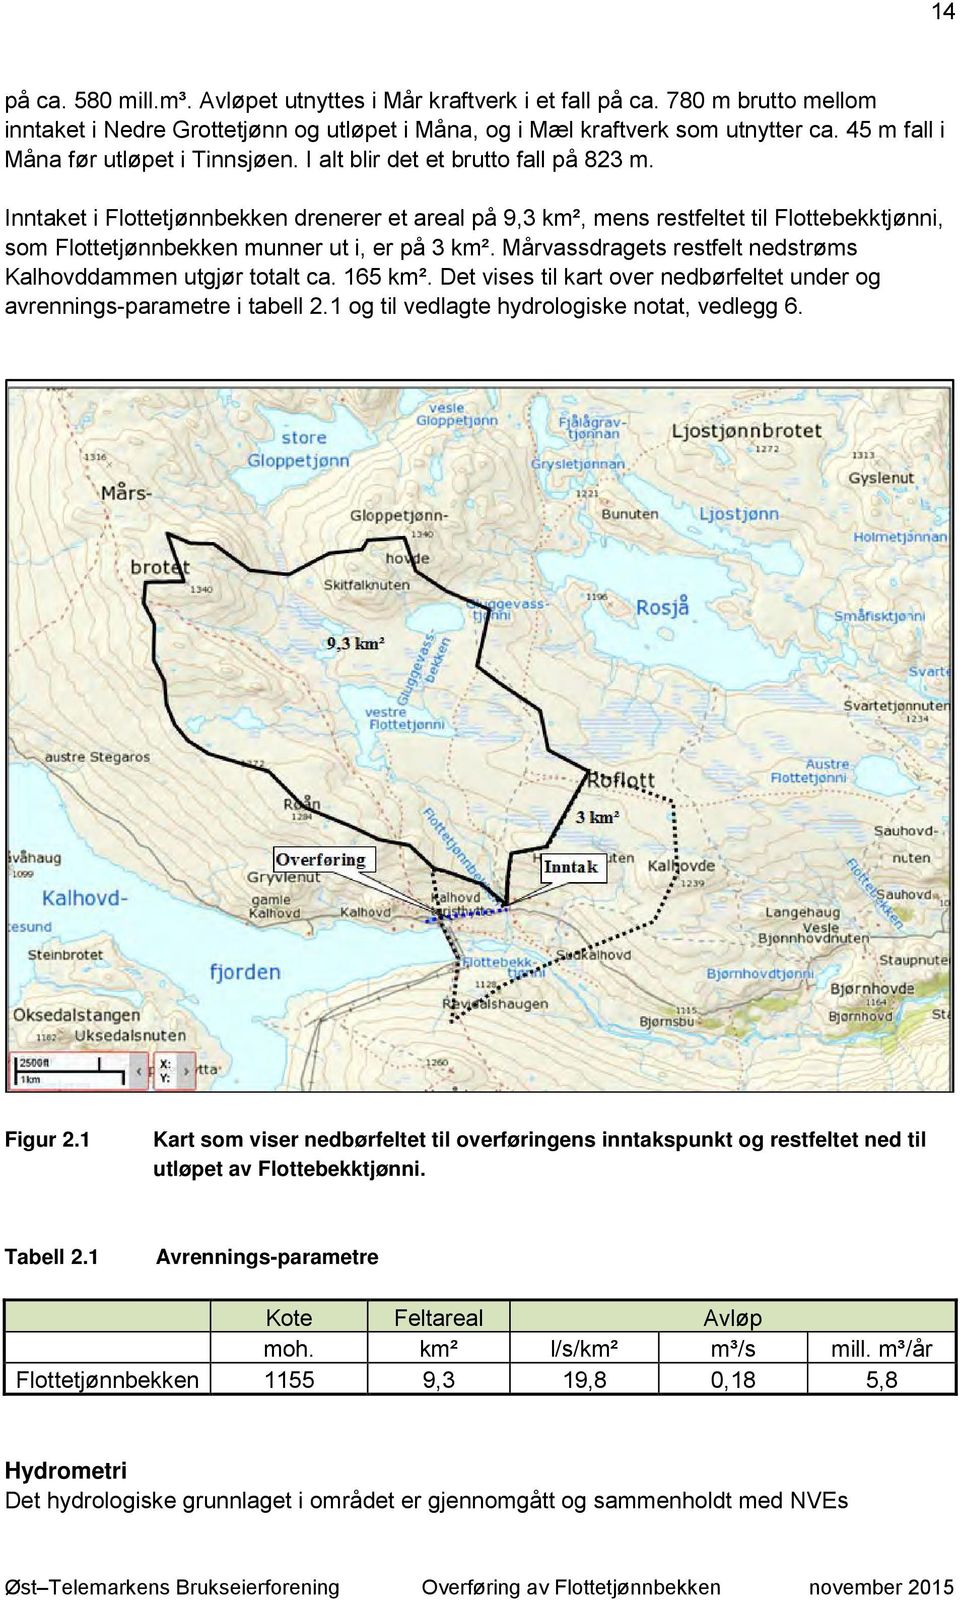 Inntaket i Flottetjønnbekken drenerer et areal på 9,3 km², mens restfeltet til Flottebekktjønni, som Flottetjønnbekken munner ut i, er på 3 km².